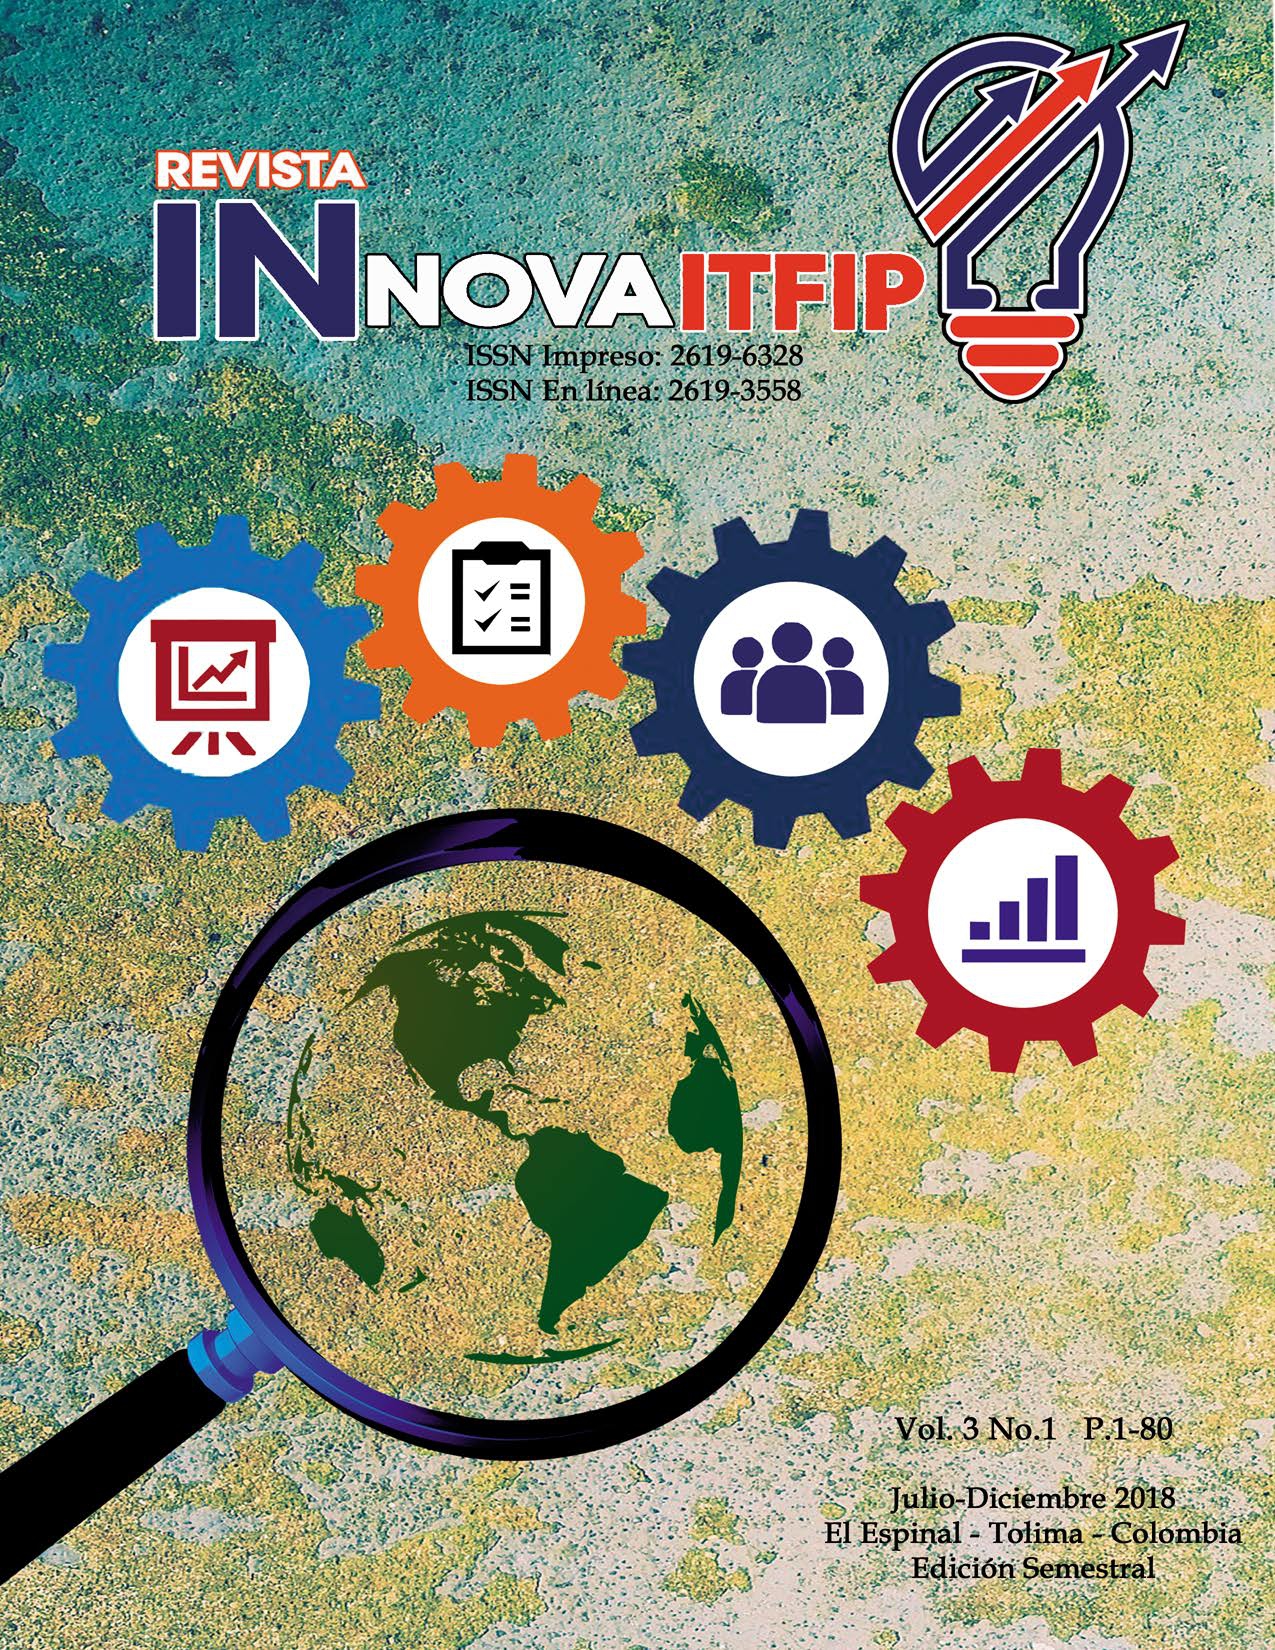                         Ver Vol. 3 Núm. 1 (2018): Revista Innova ITFIP
                    